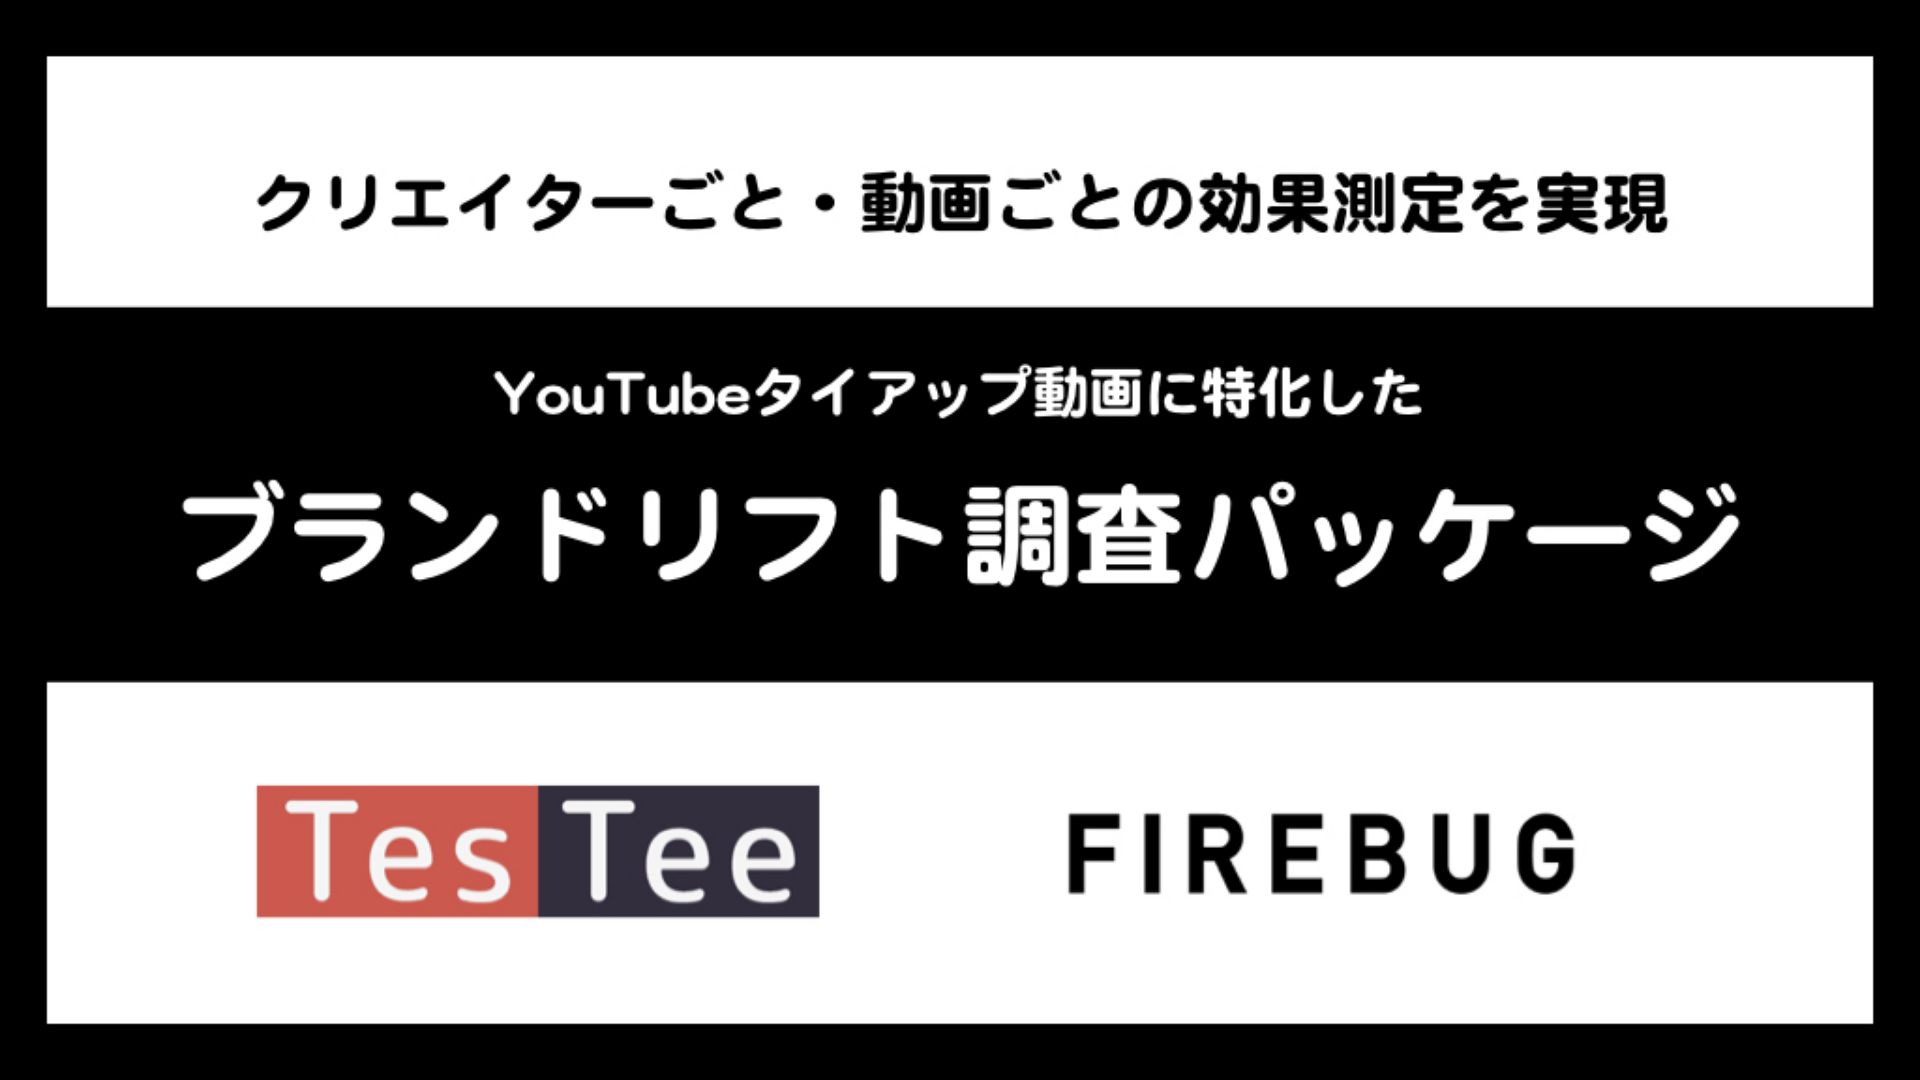 FIREBUGとTesTeeが共同開発、YouTubeタイアップ動画に特化した「ブランドリフト調査パッケージ」を提供開始～クリエイターごとのブランドリフト調査・動画ごとのクリエイティブ評価が可能に～